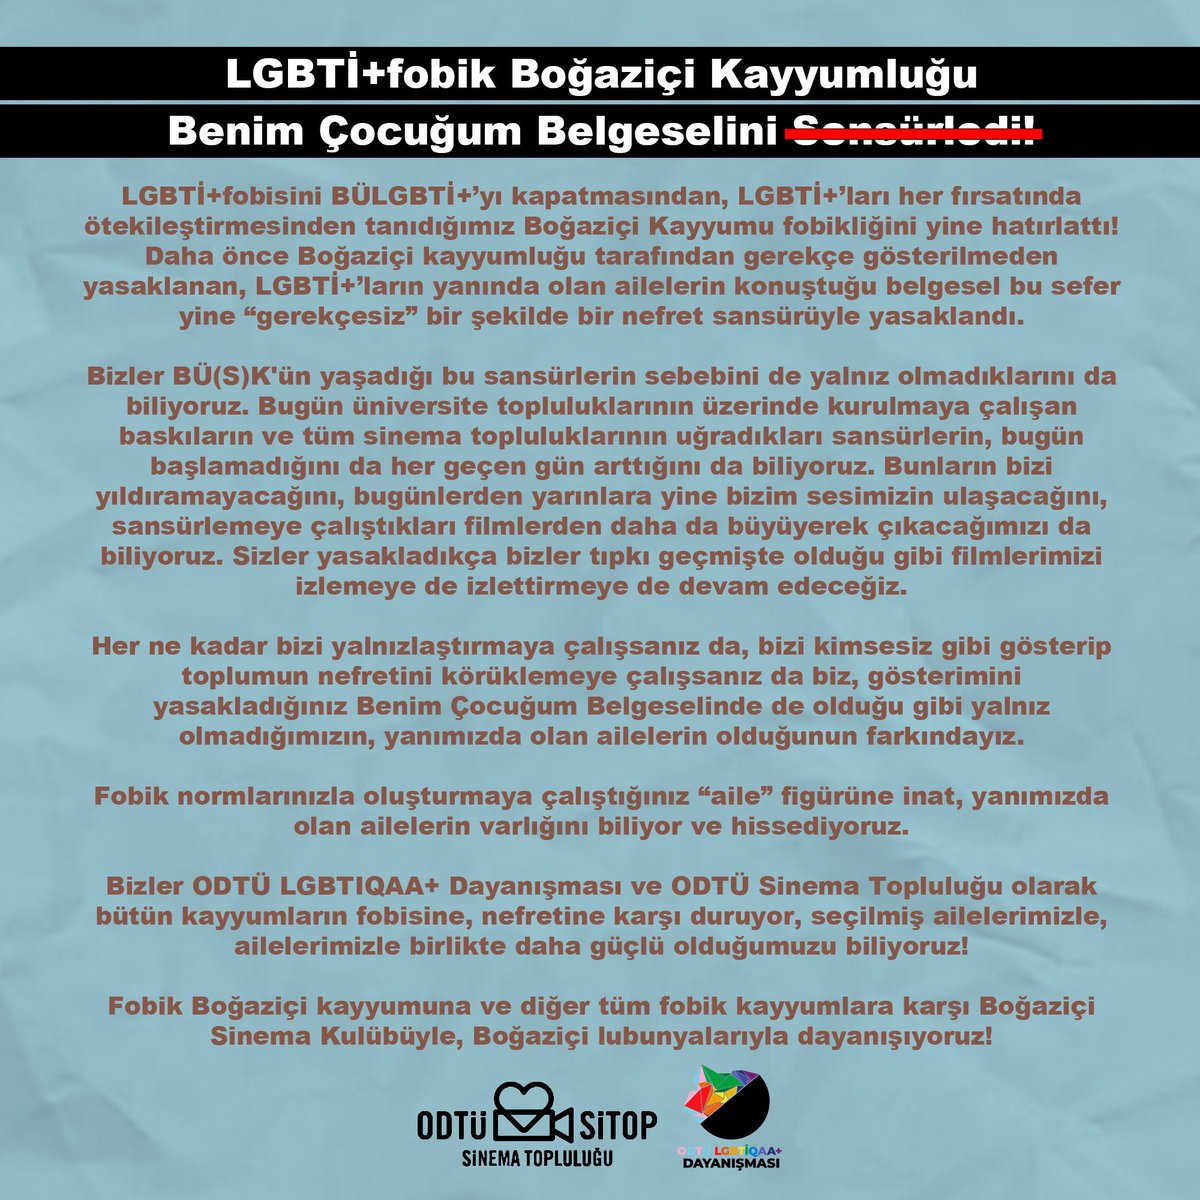 Bizler ODTÜ LGBTIQAA+ Dayanışması ve ODTÜ Sinema Topluluğu olarak bütün kayyumların fobisine, nefretine karşı duruyor, seçilmiş ailelerimizle, ailelerimizle birlikte daha güçlü olduğumuzu biliyoruz! Boğaziçi Sinema Kulübüyle, Boğaziçi lubunyalarıyla dayanışıyoruz! 🏳️‍🌈🏳️‍⚧️